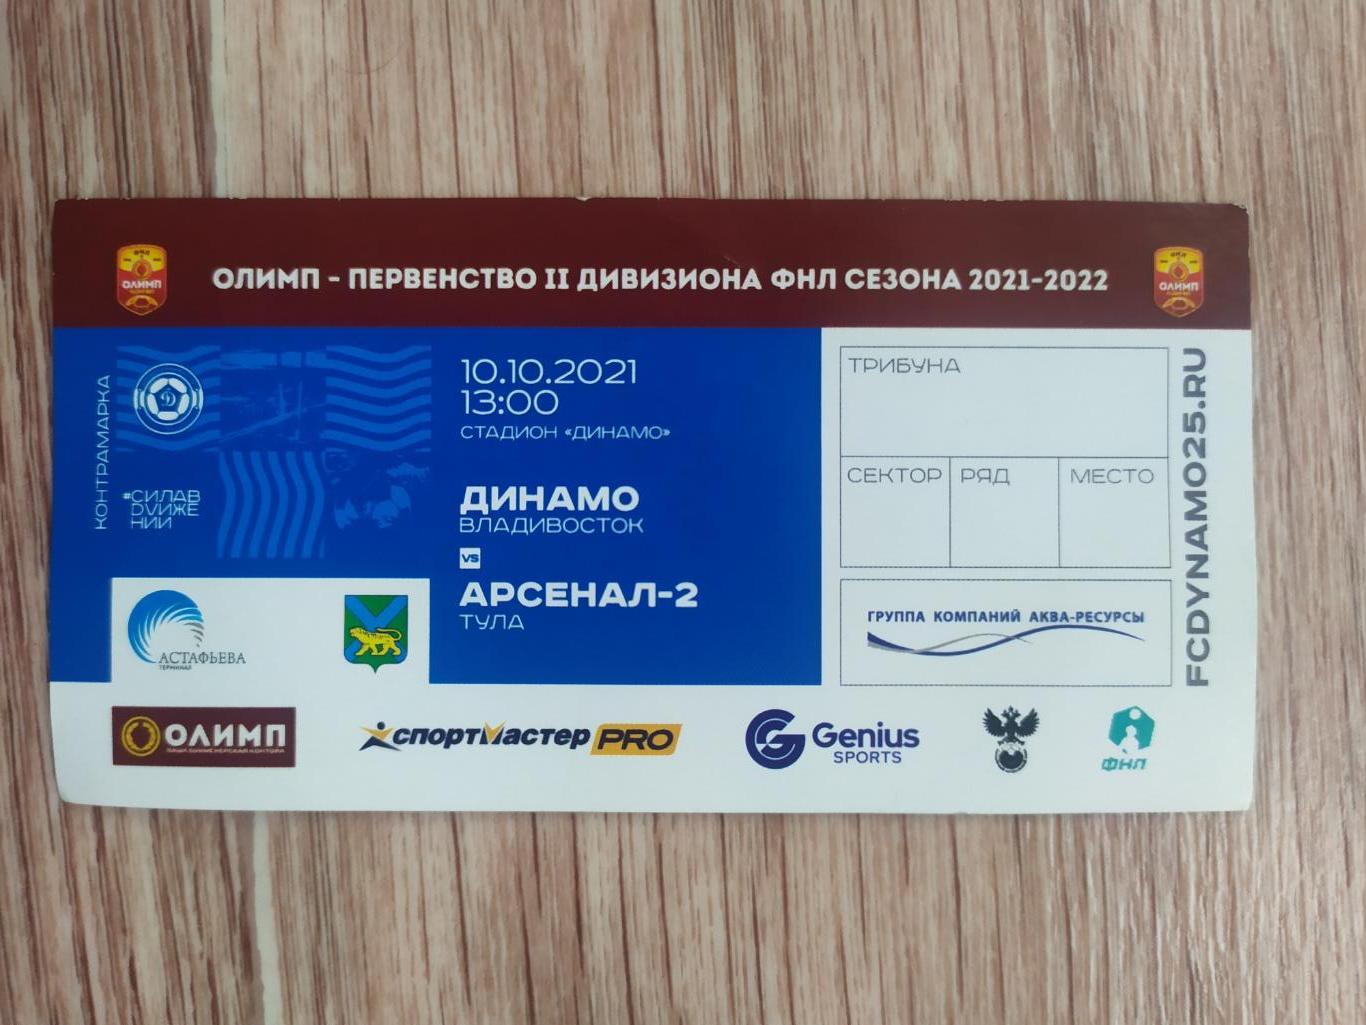 Динамо (Владивосток) - Арсенал 2(Тула) 10.10.2021